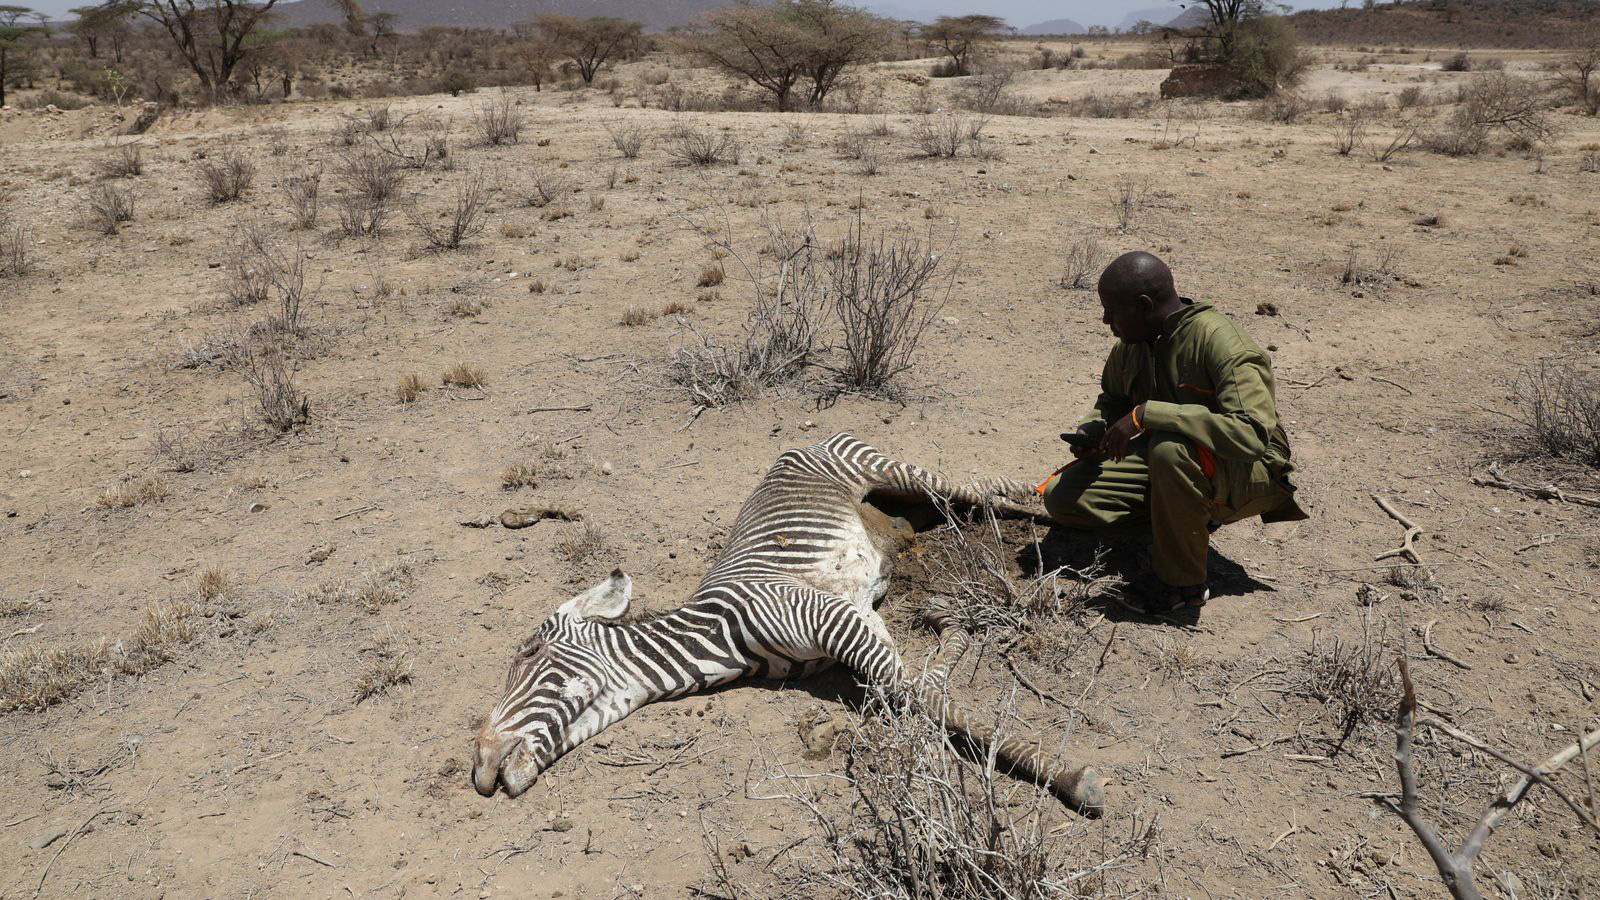 Hạn hán đã giết chết hơn 200 con voi Kenya trong 10 tháng - Ảnh 2.